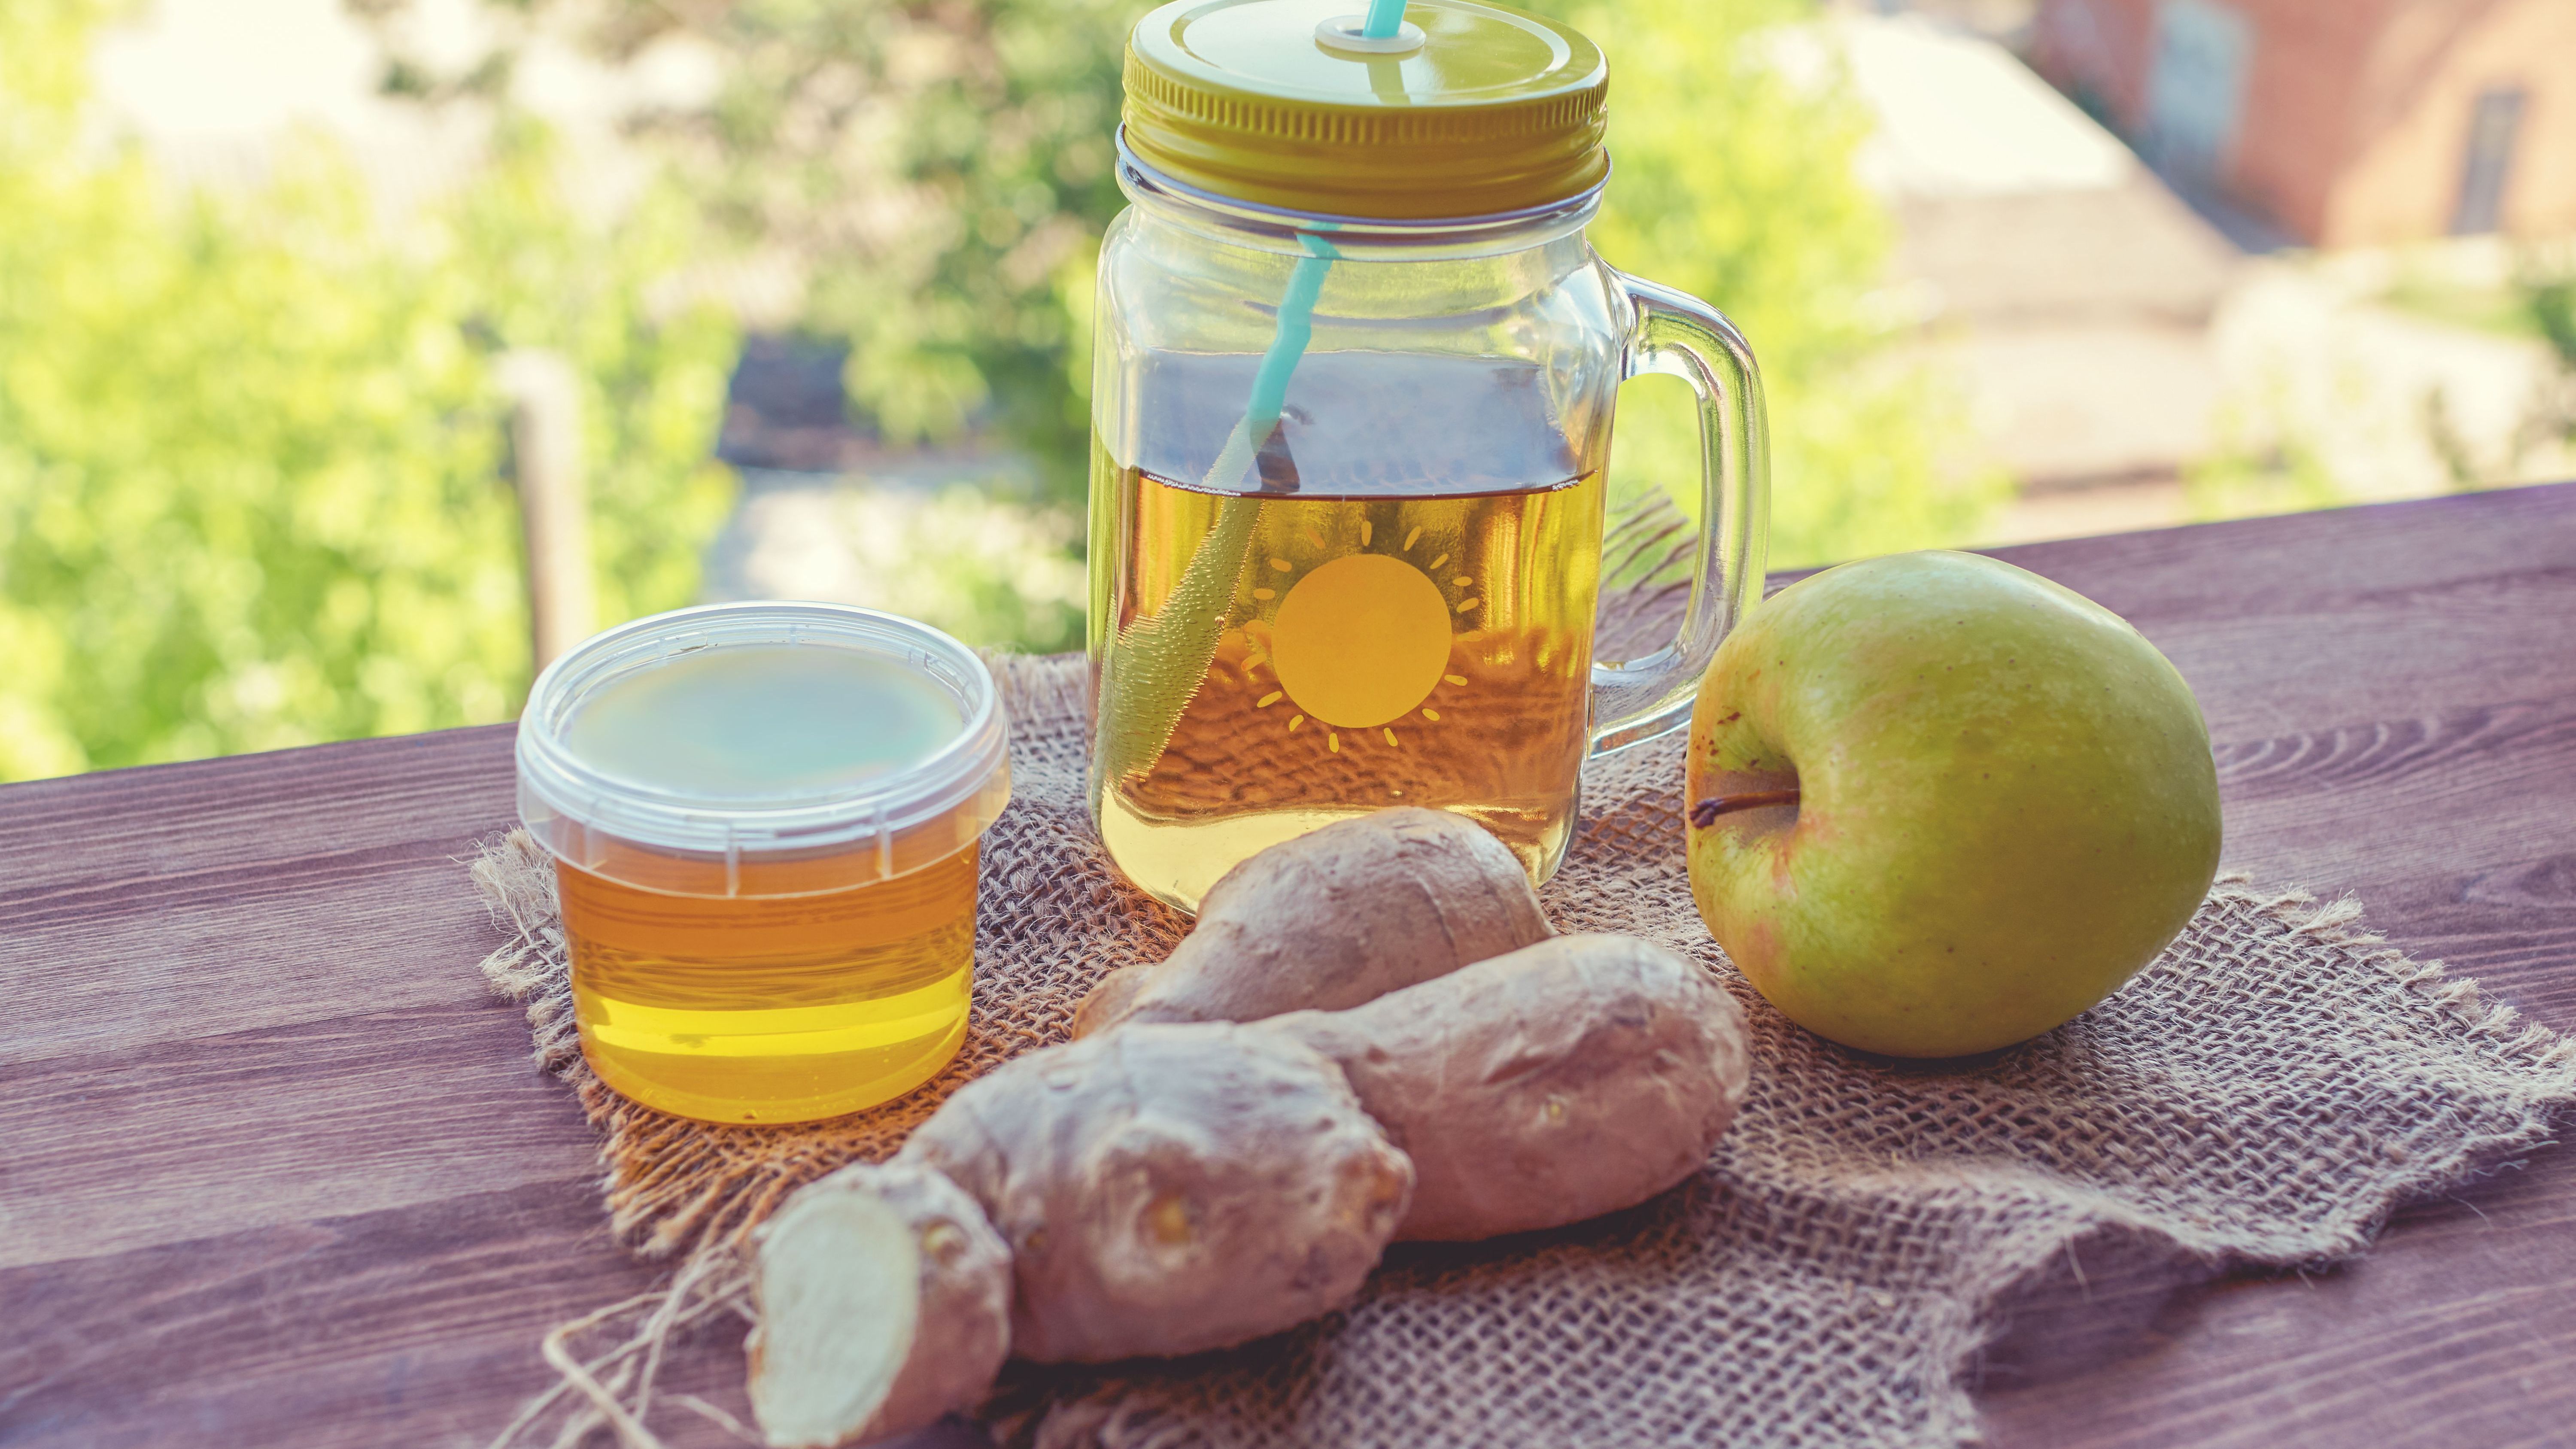 Die Zutaten für einen Switchel hast du wahrscheinlich bereits in deiner Küche: Apfelessig, Ingwer, Zitrone und Honig.